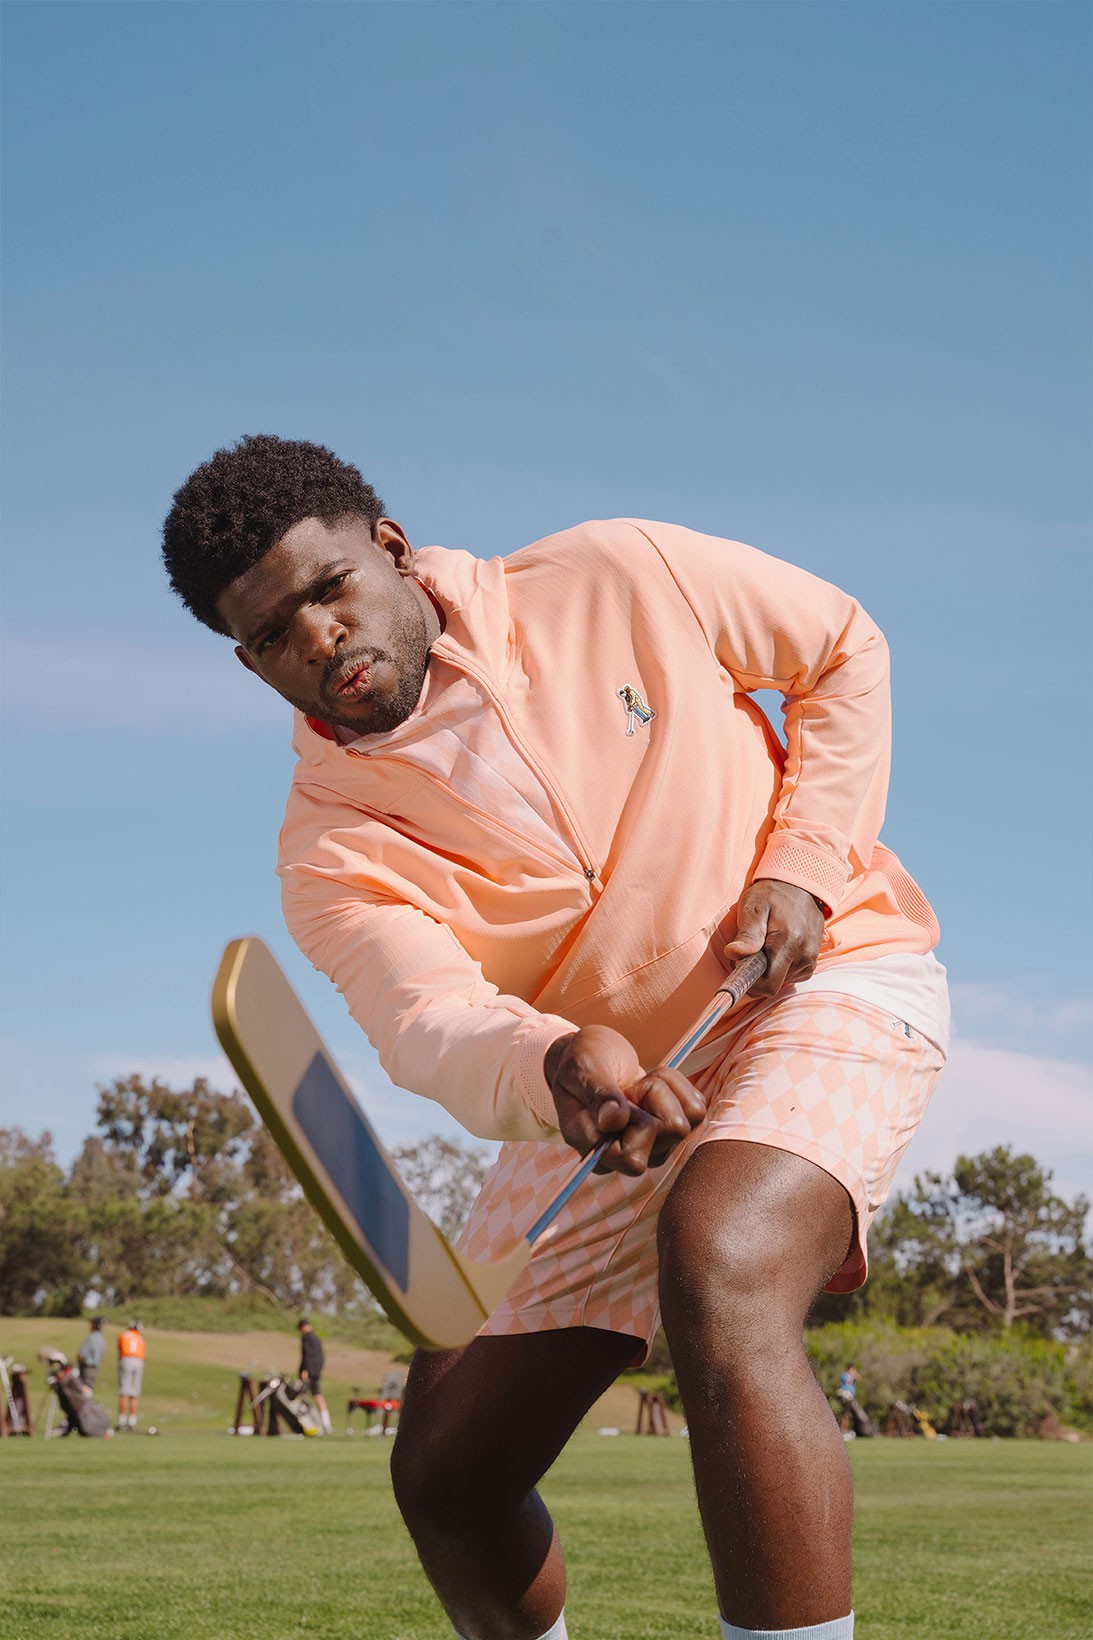 adidas выпустил гольф-коллекцию в стиле комедии «Счастливчик Гилмор» (фото 17)